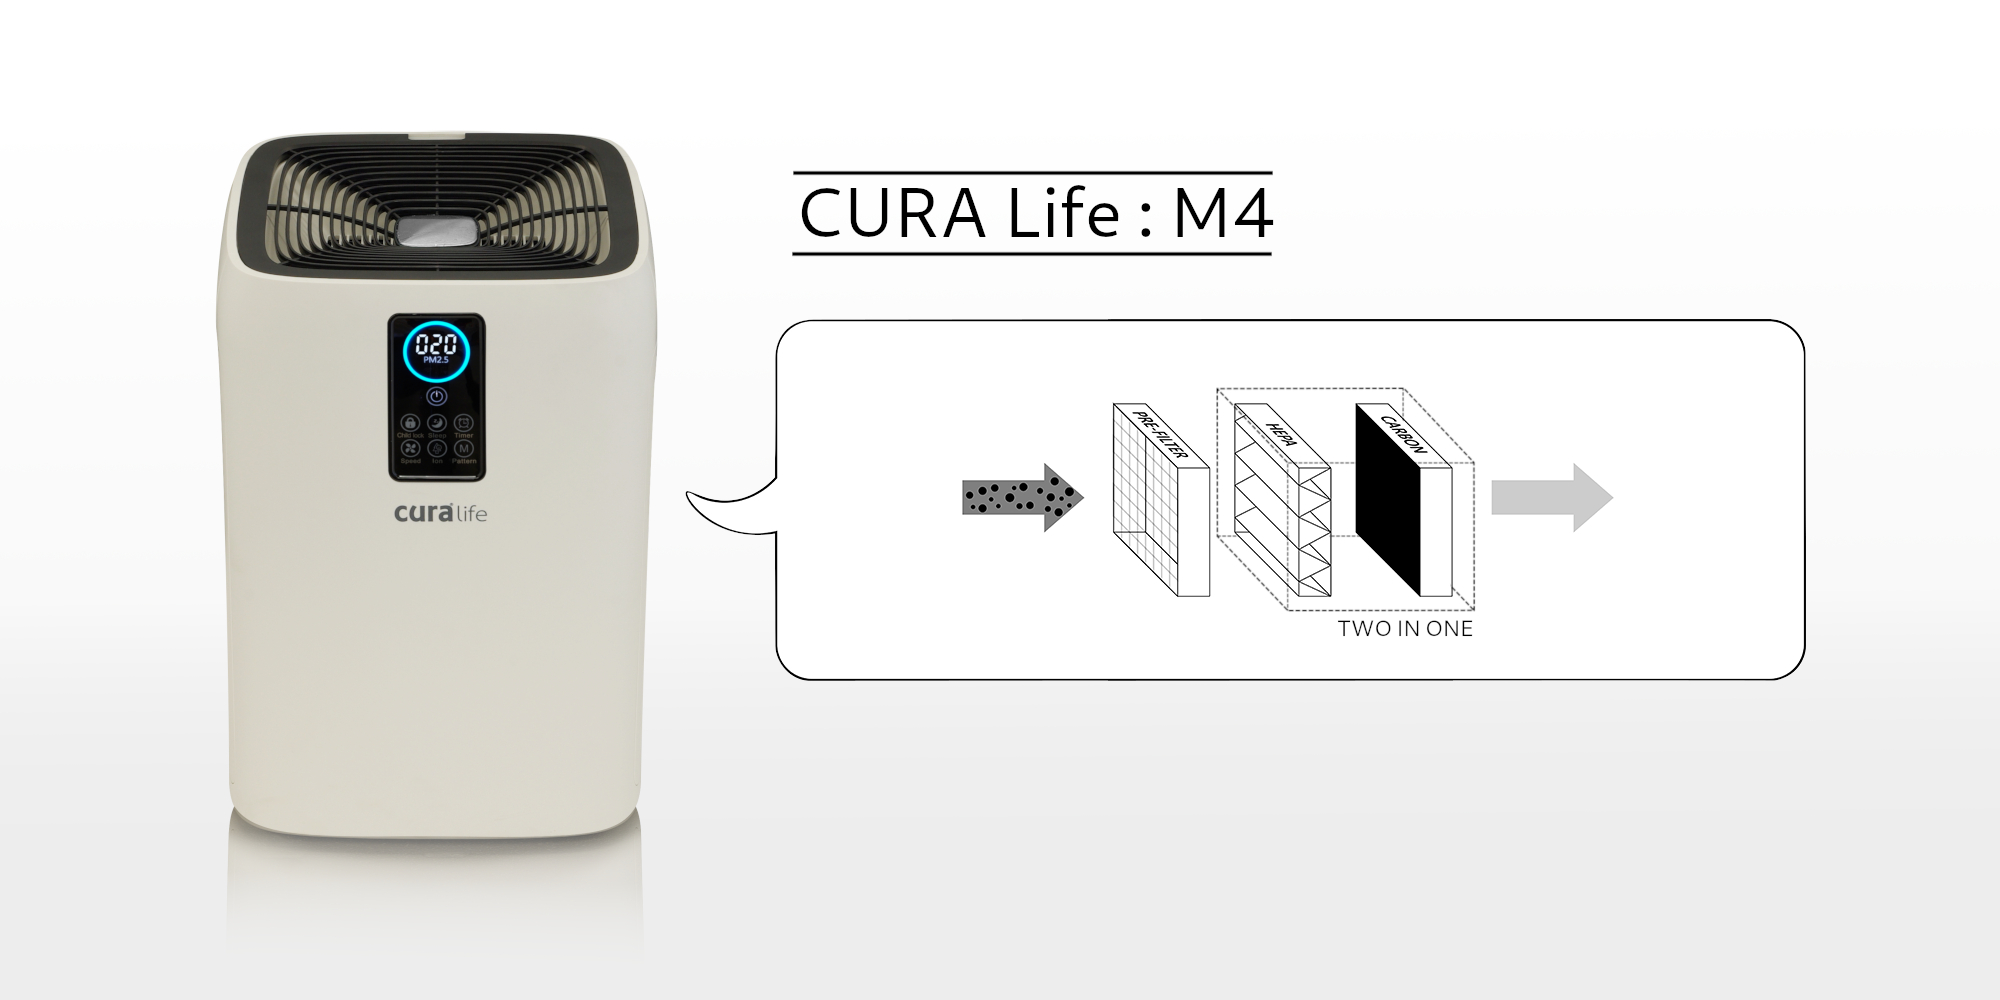 เครื่องฟอกอากาศ กรองดักกำจัดฝุ่นด้วย Pre-filter และ HEPA filter ดักจับกลิ่นด้วย Activated Carbon ยี่ห้อ CURA Life รุ่น M4 สามารถดักจับฝุ่นละเอียดระดับ PM 2.5 ได้มากกว่า 99%